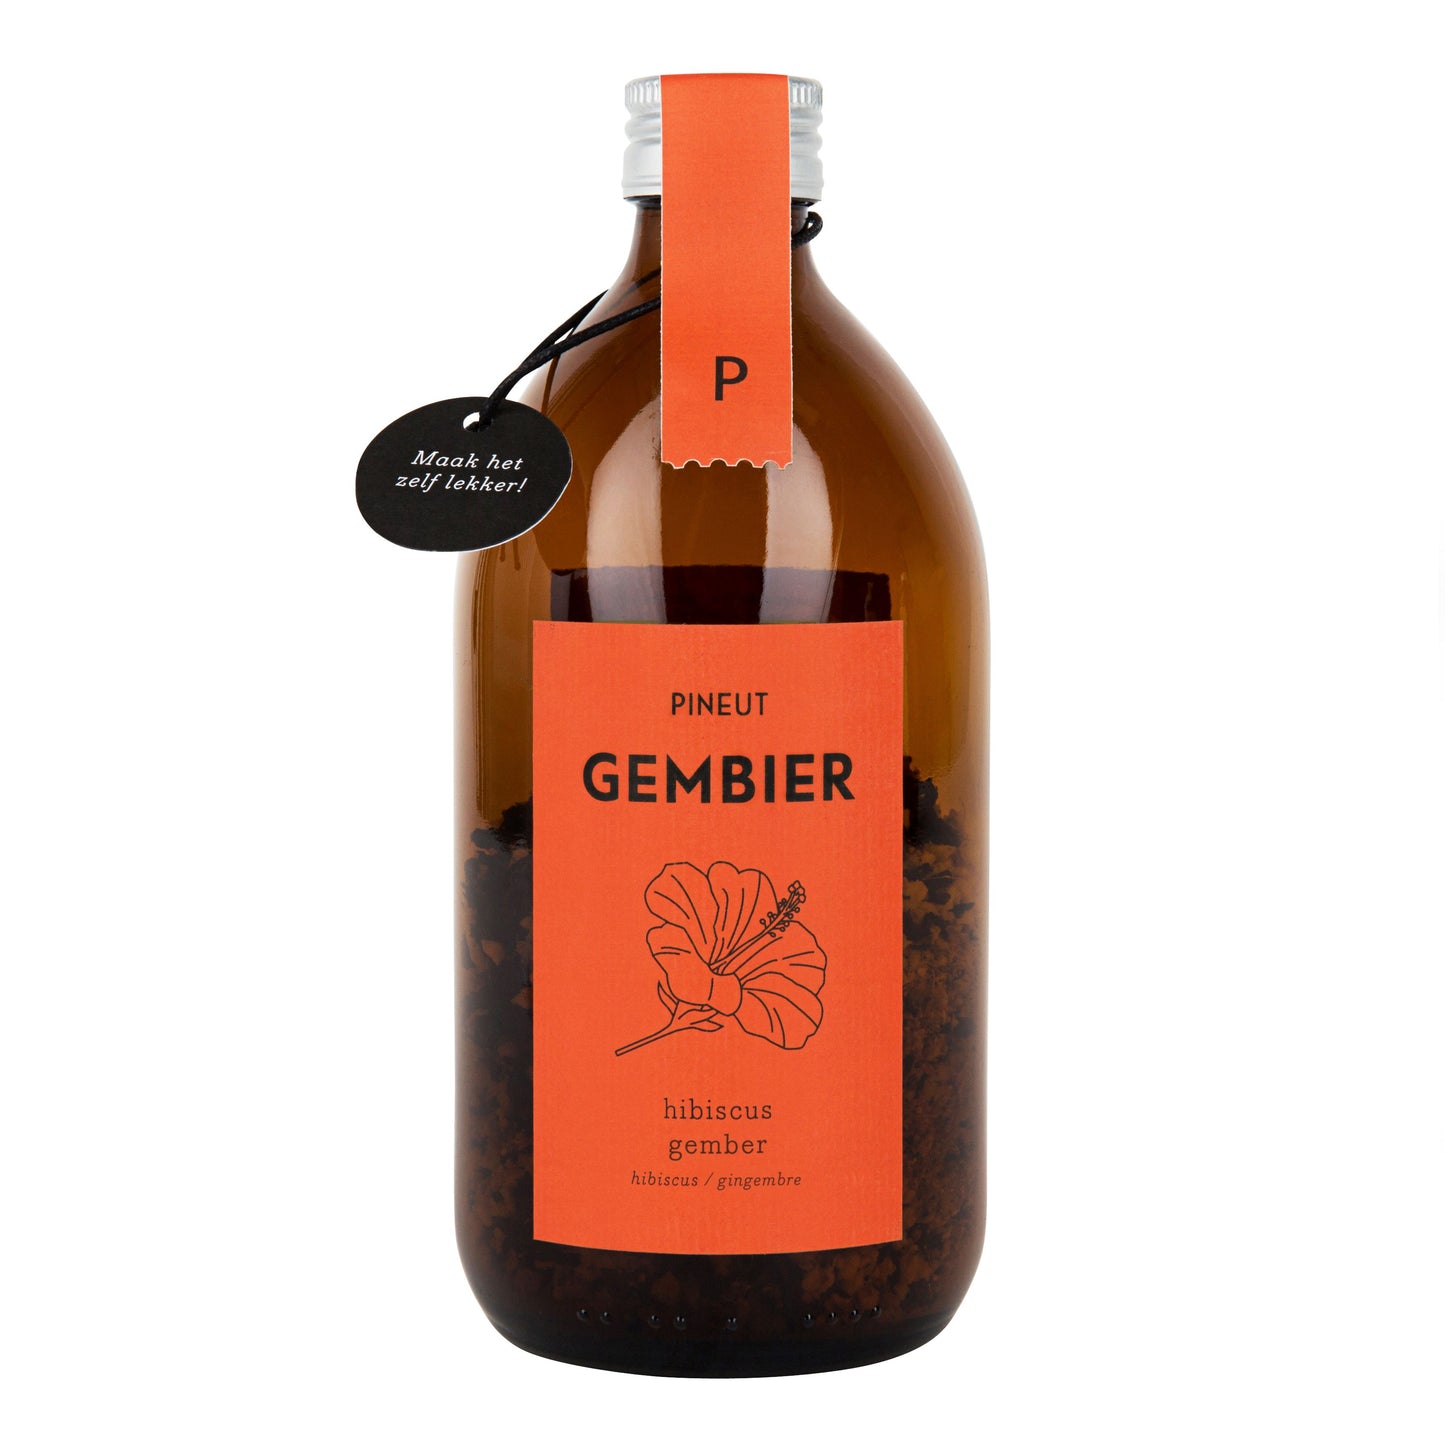 Pineut Gembier - Hibiscus Gember (Gemberbier)